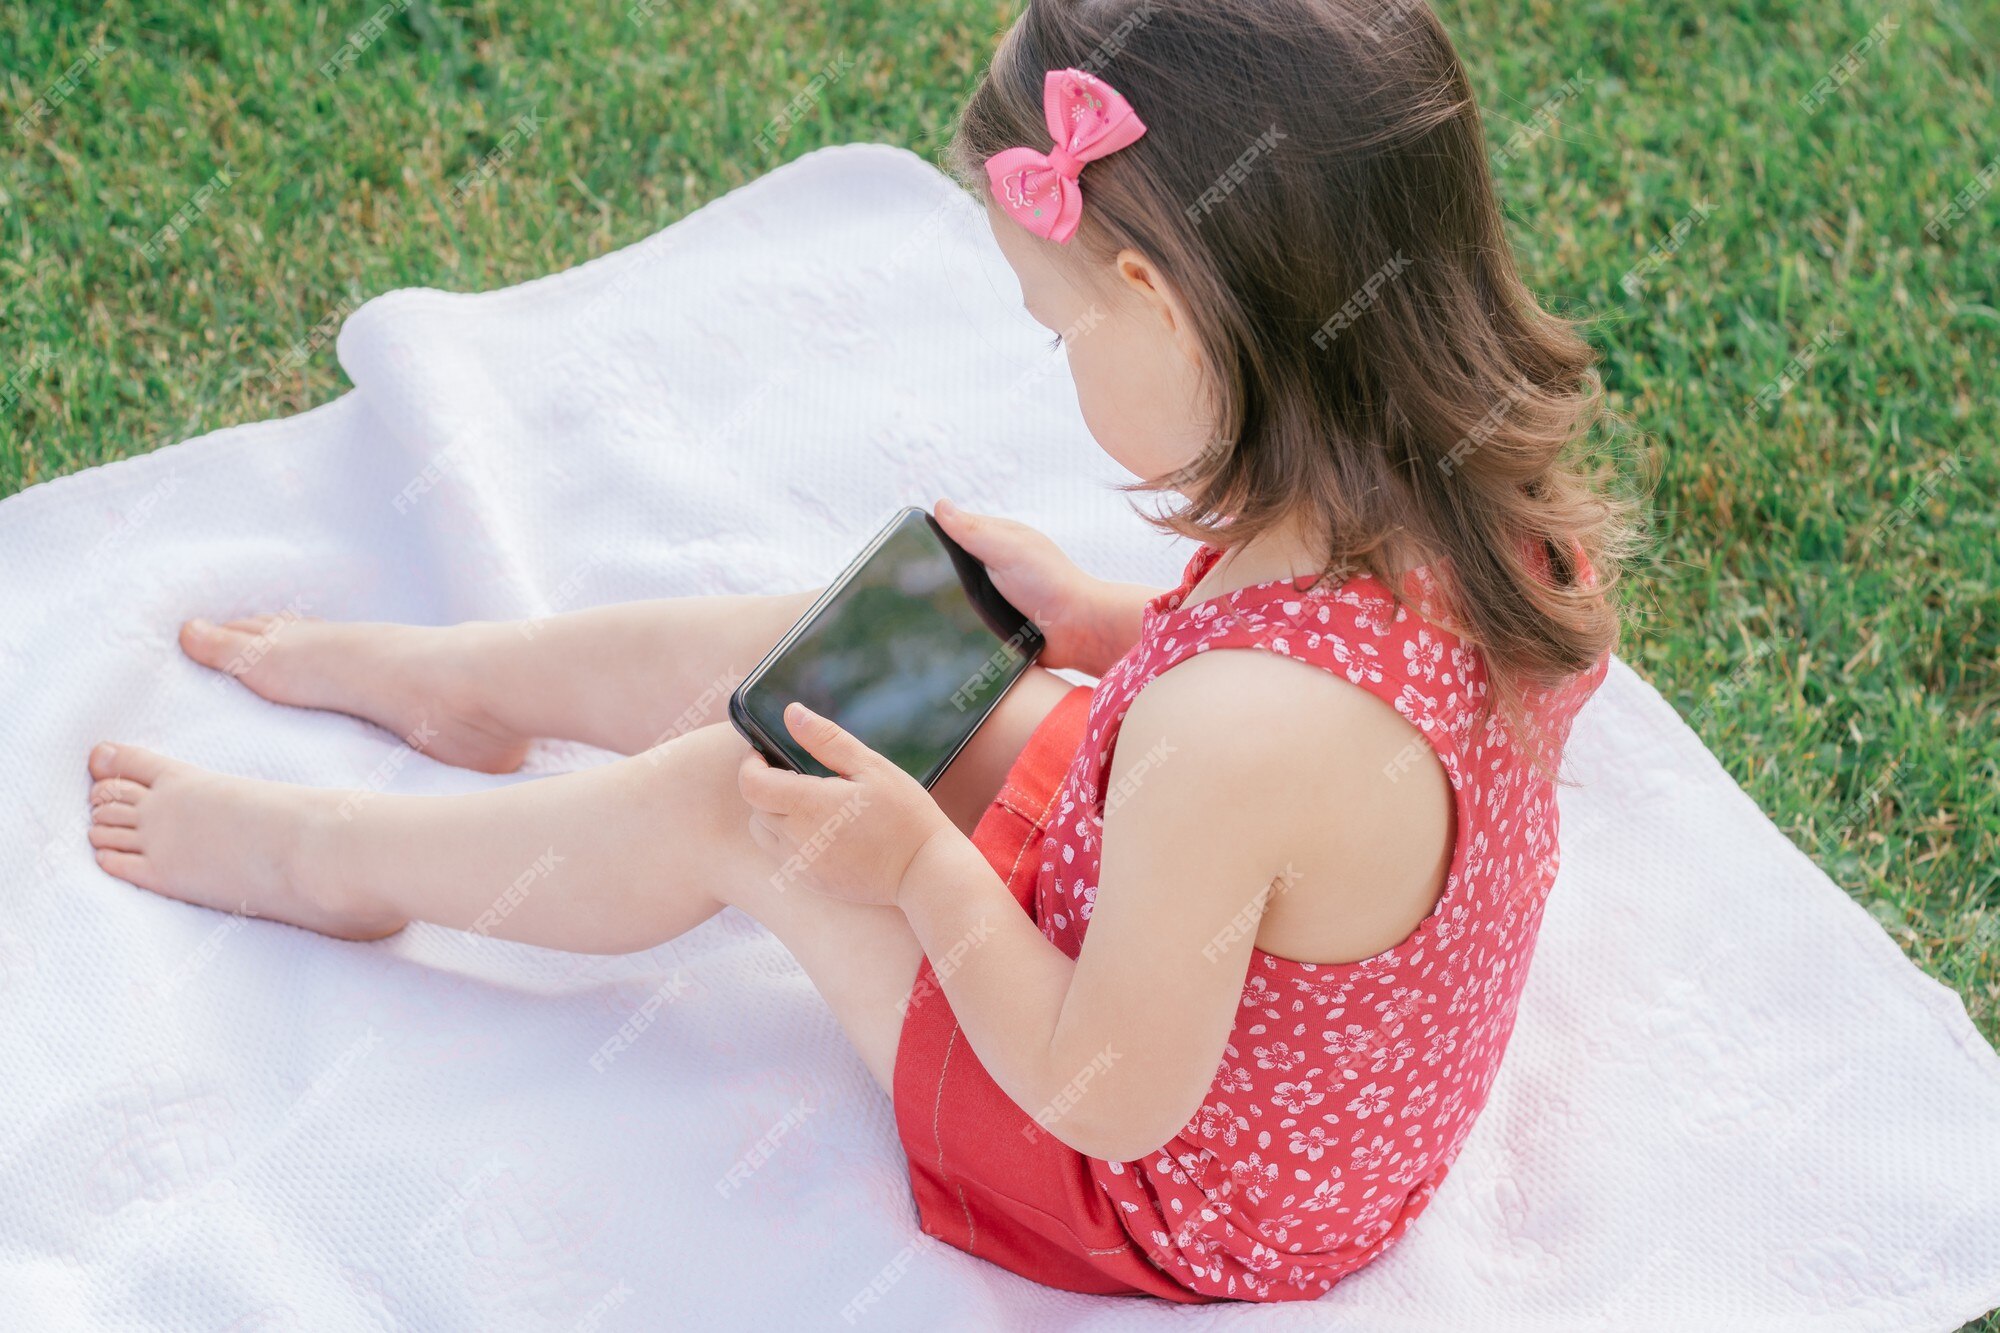 Une Petite Fille De 3 à 4 Ans En Vêtements Rouges Est Assise Sur Une  Couverture Sur L'herbe Verte Et Se Penche Sur Le Téléphone Portable. Enfants,  Utilisant Des Gadgets